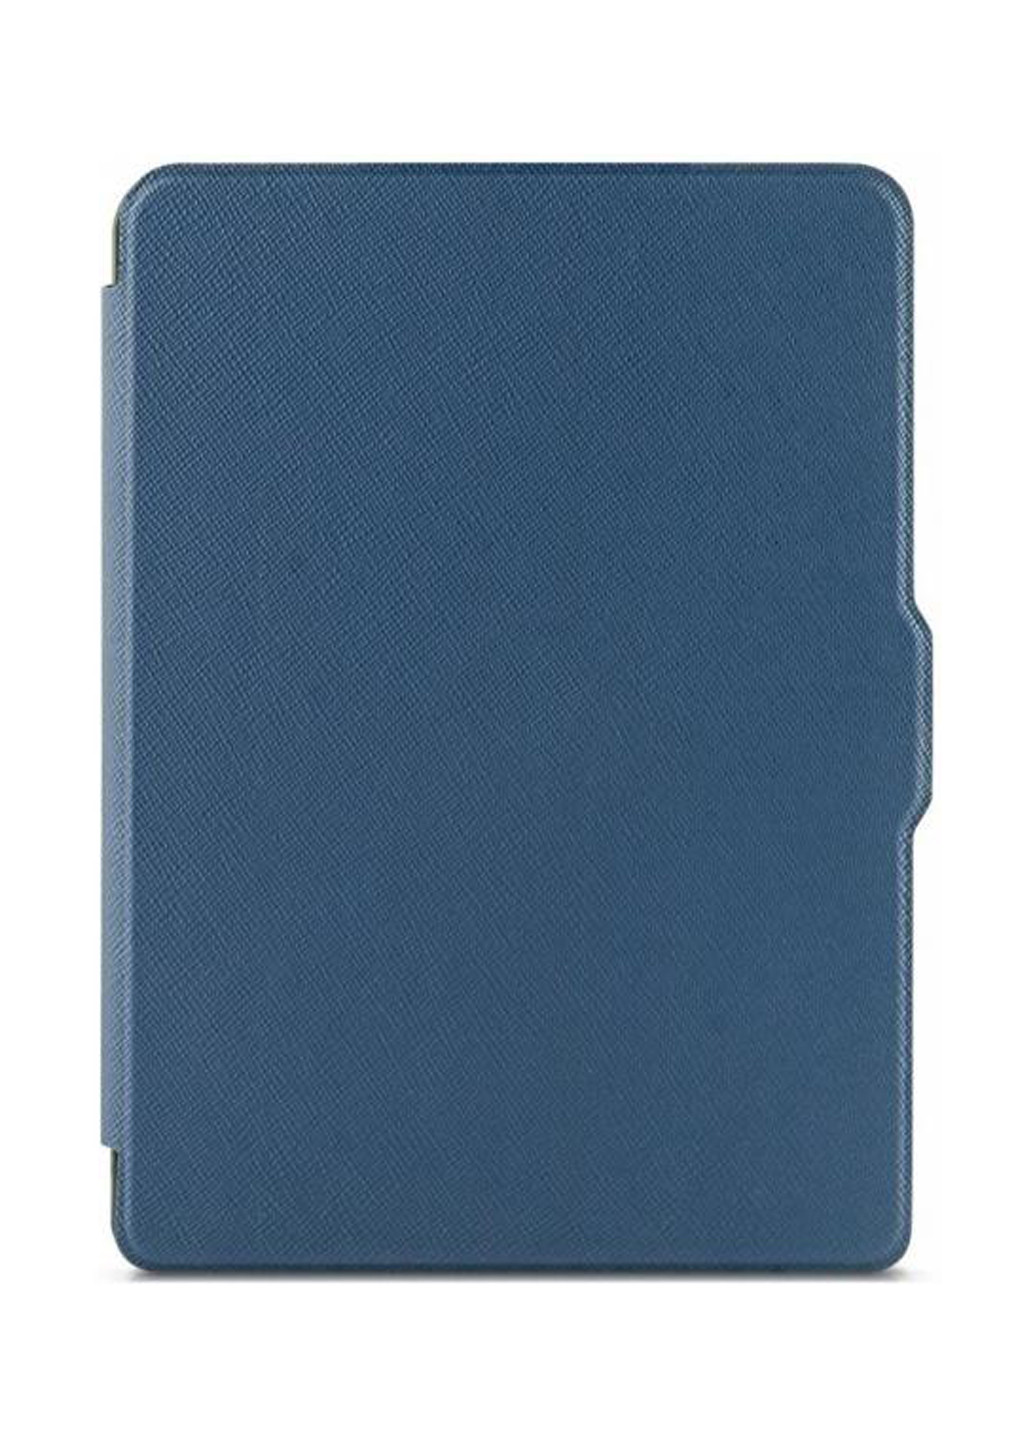 Чехол Premium для AIRBOOK City Base/LED blue (4821784622006) Airon premium для электронной книги airbook city base/led blue (4821784622006) (158554742)